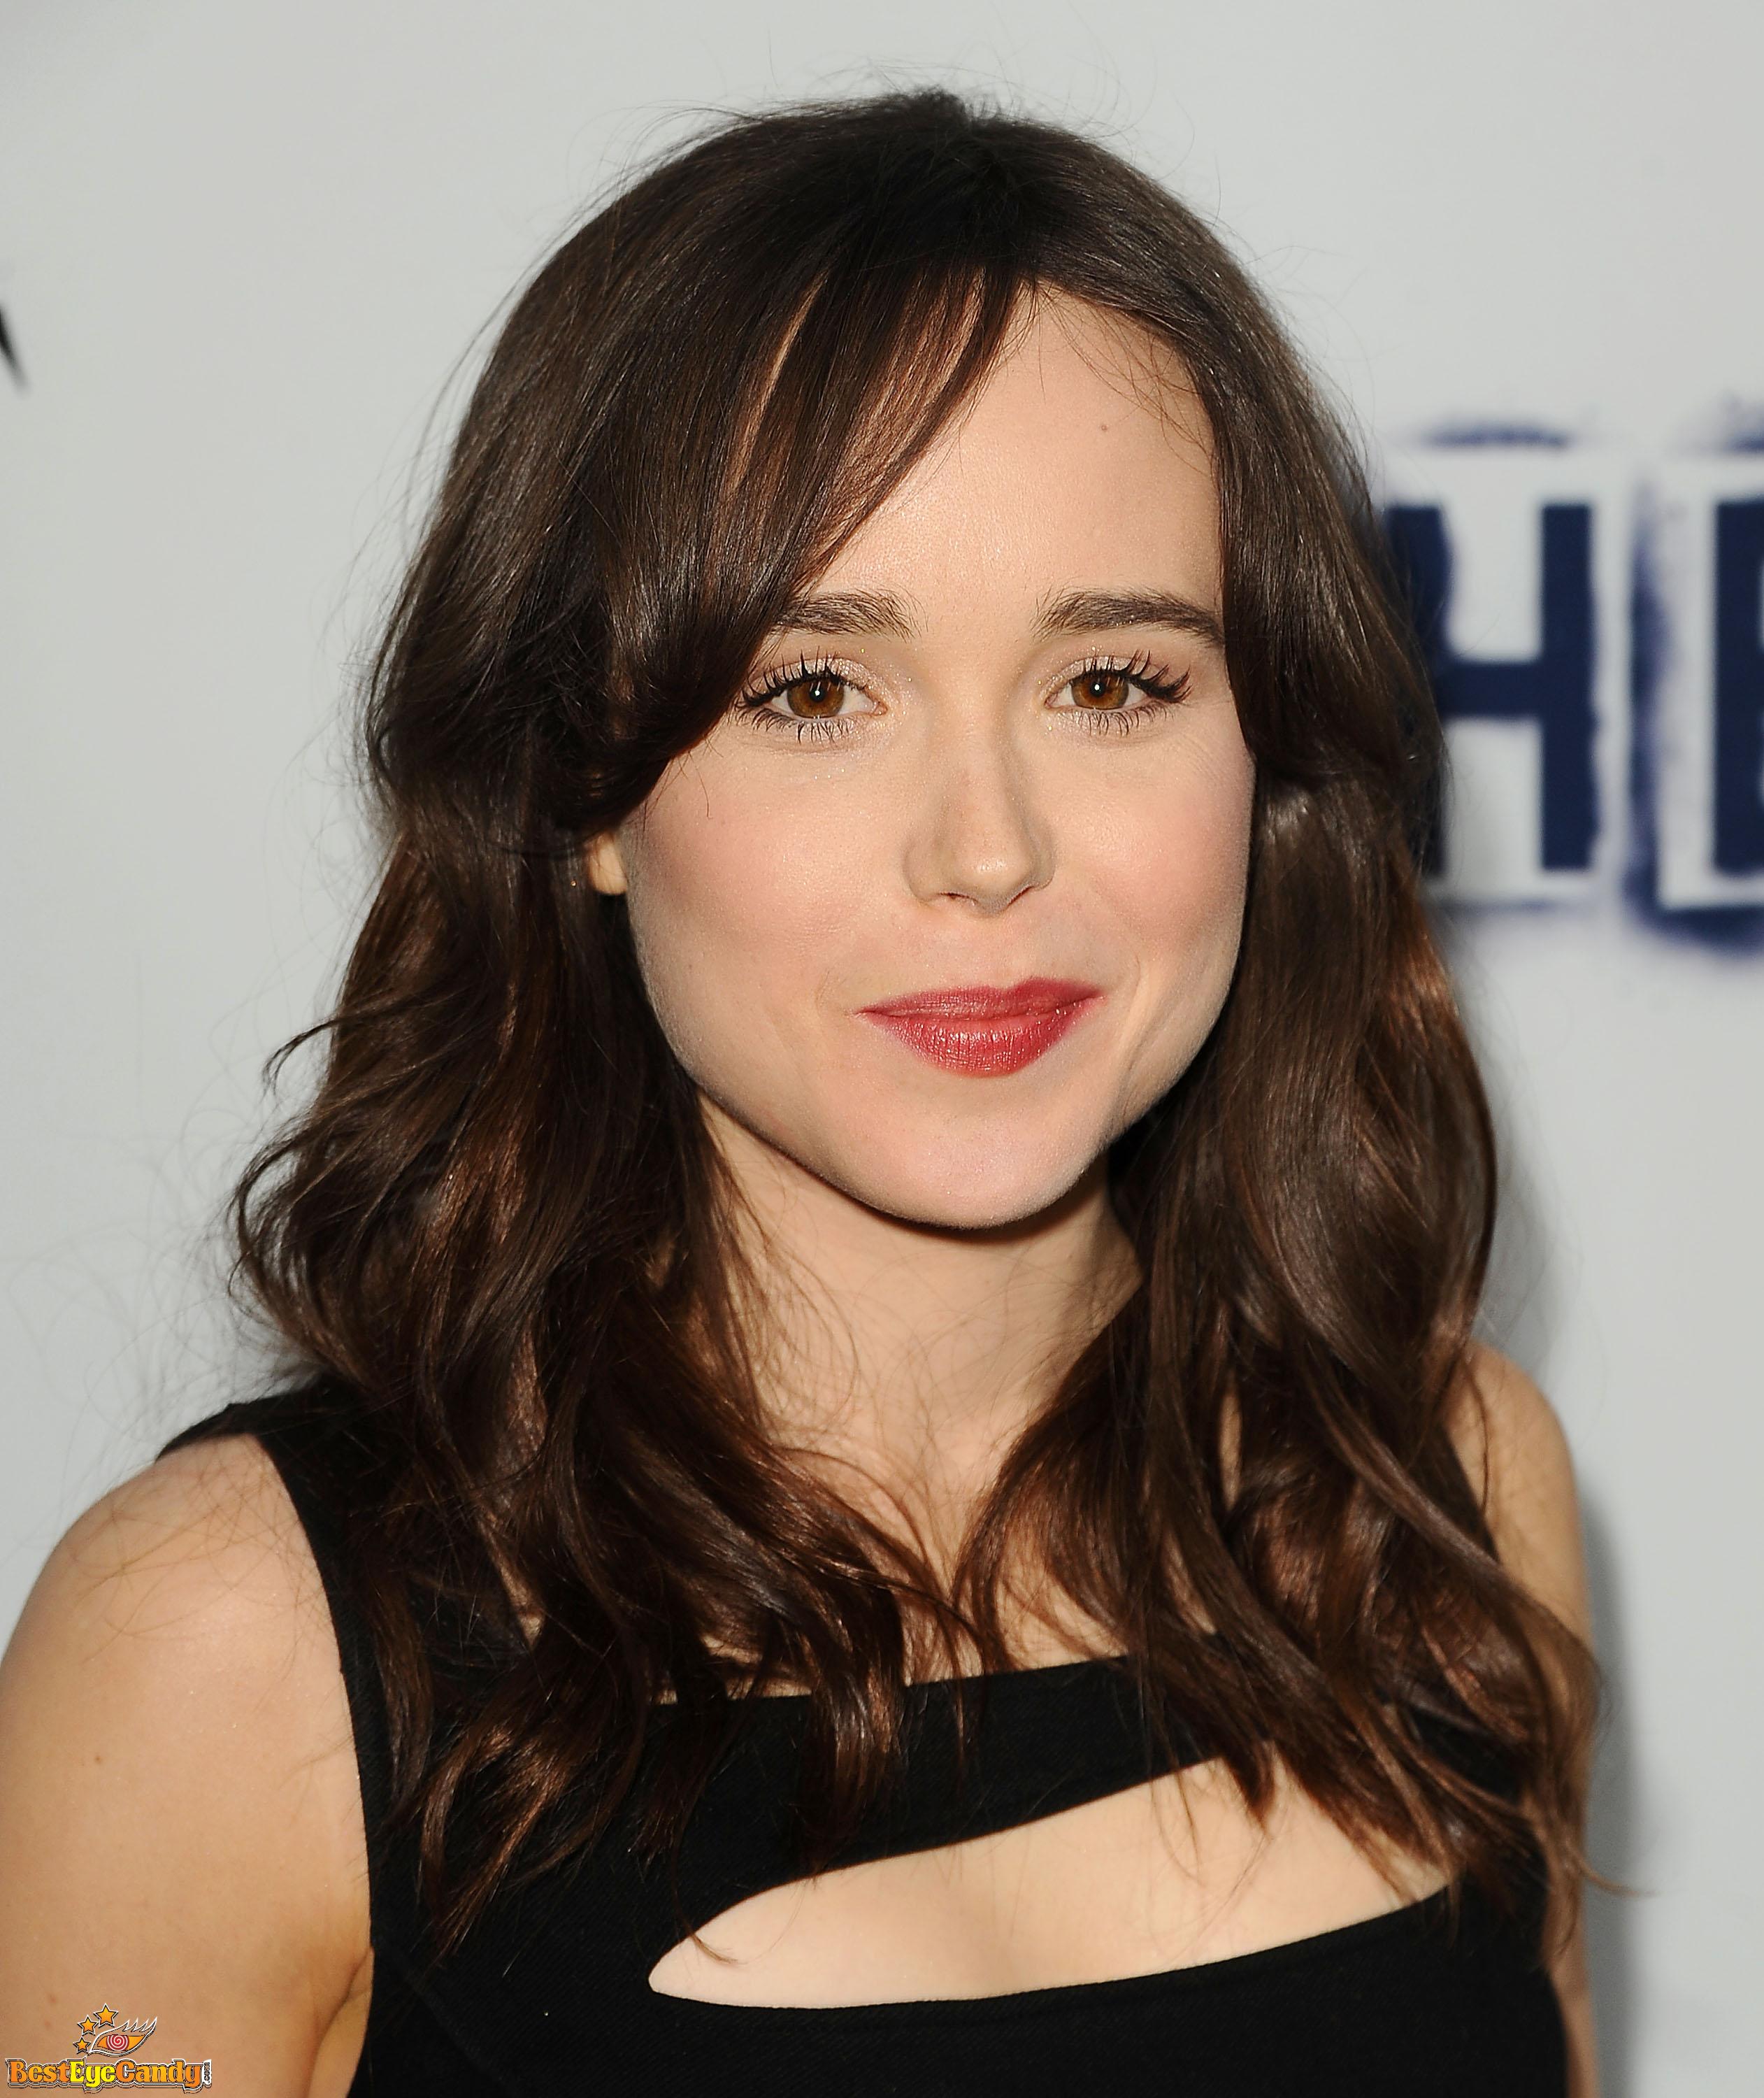 Ellen Page Photo #2240290 [2523x3000] @ ...::: BestEyeCandy.com